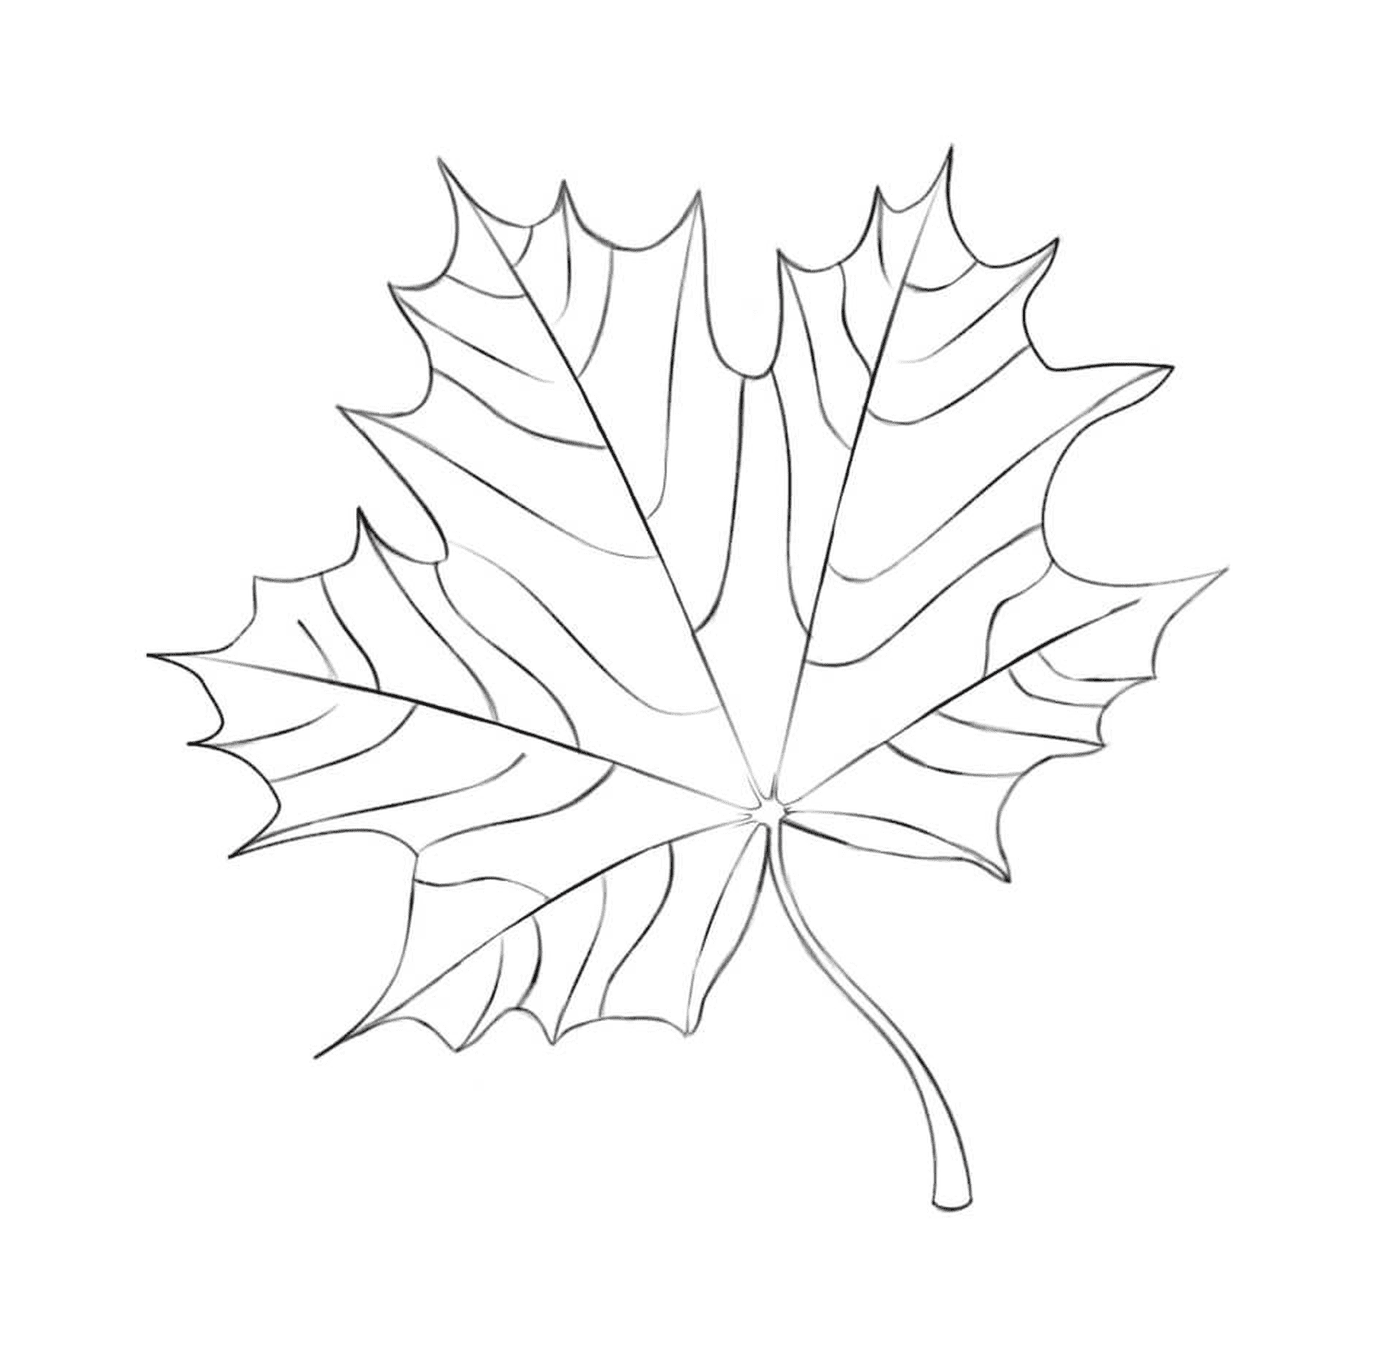  A drawn maple leaf 